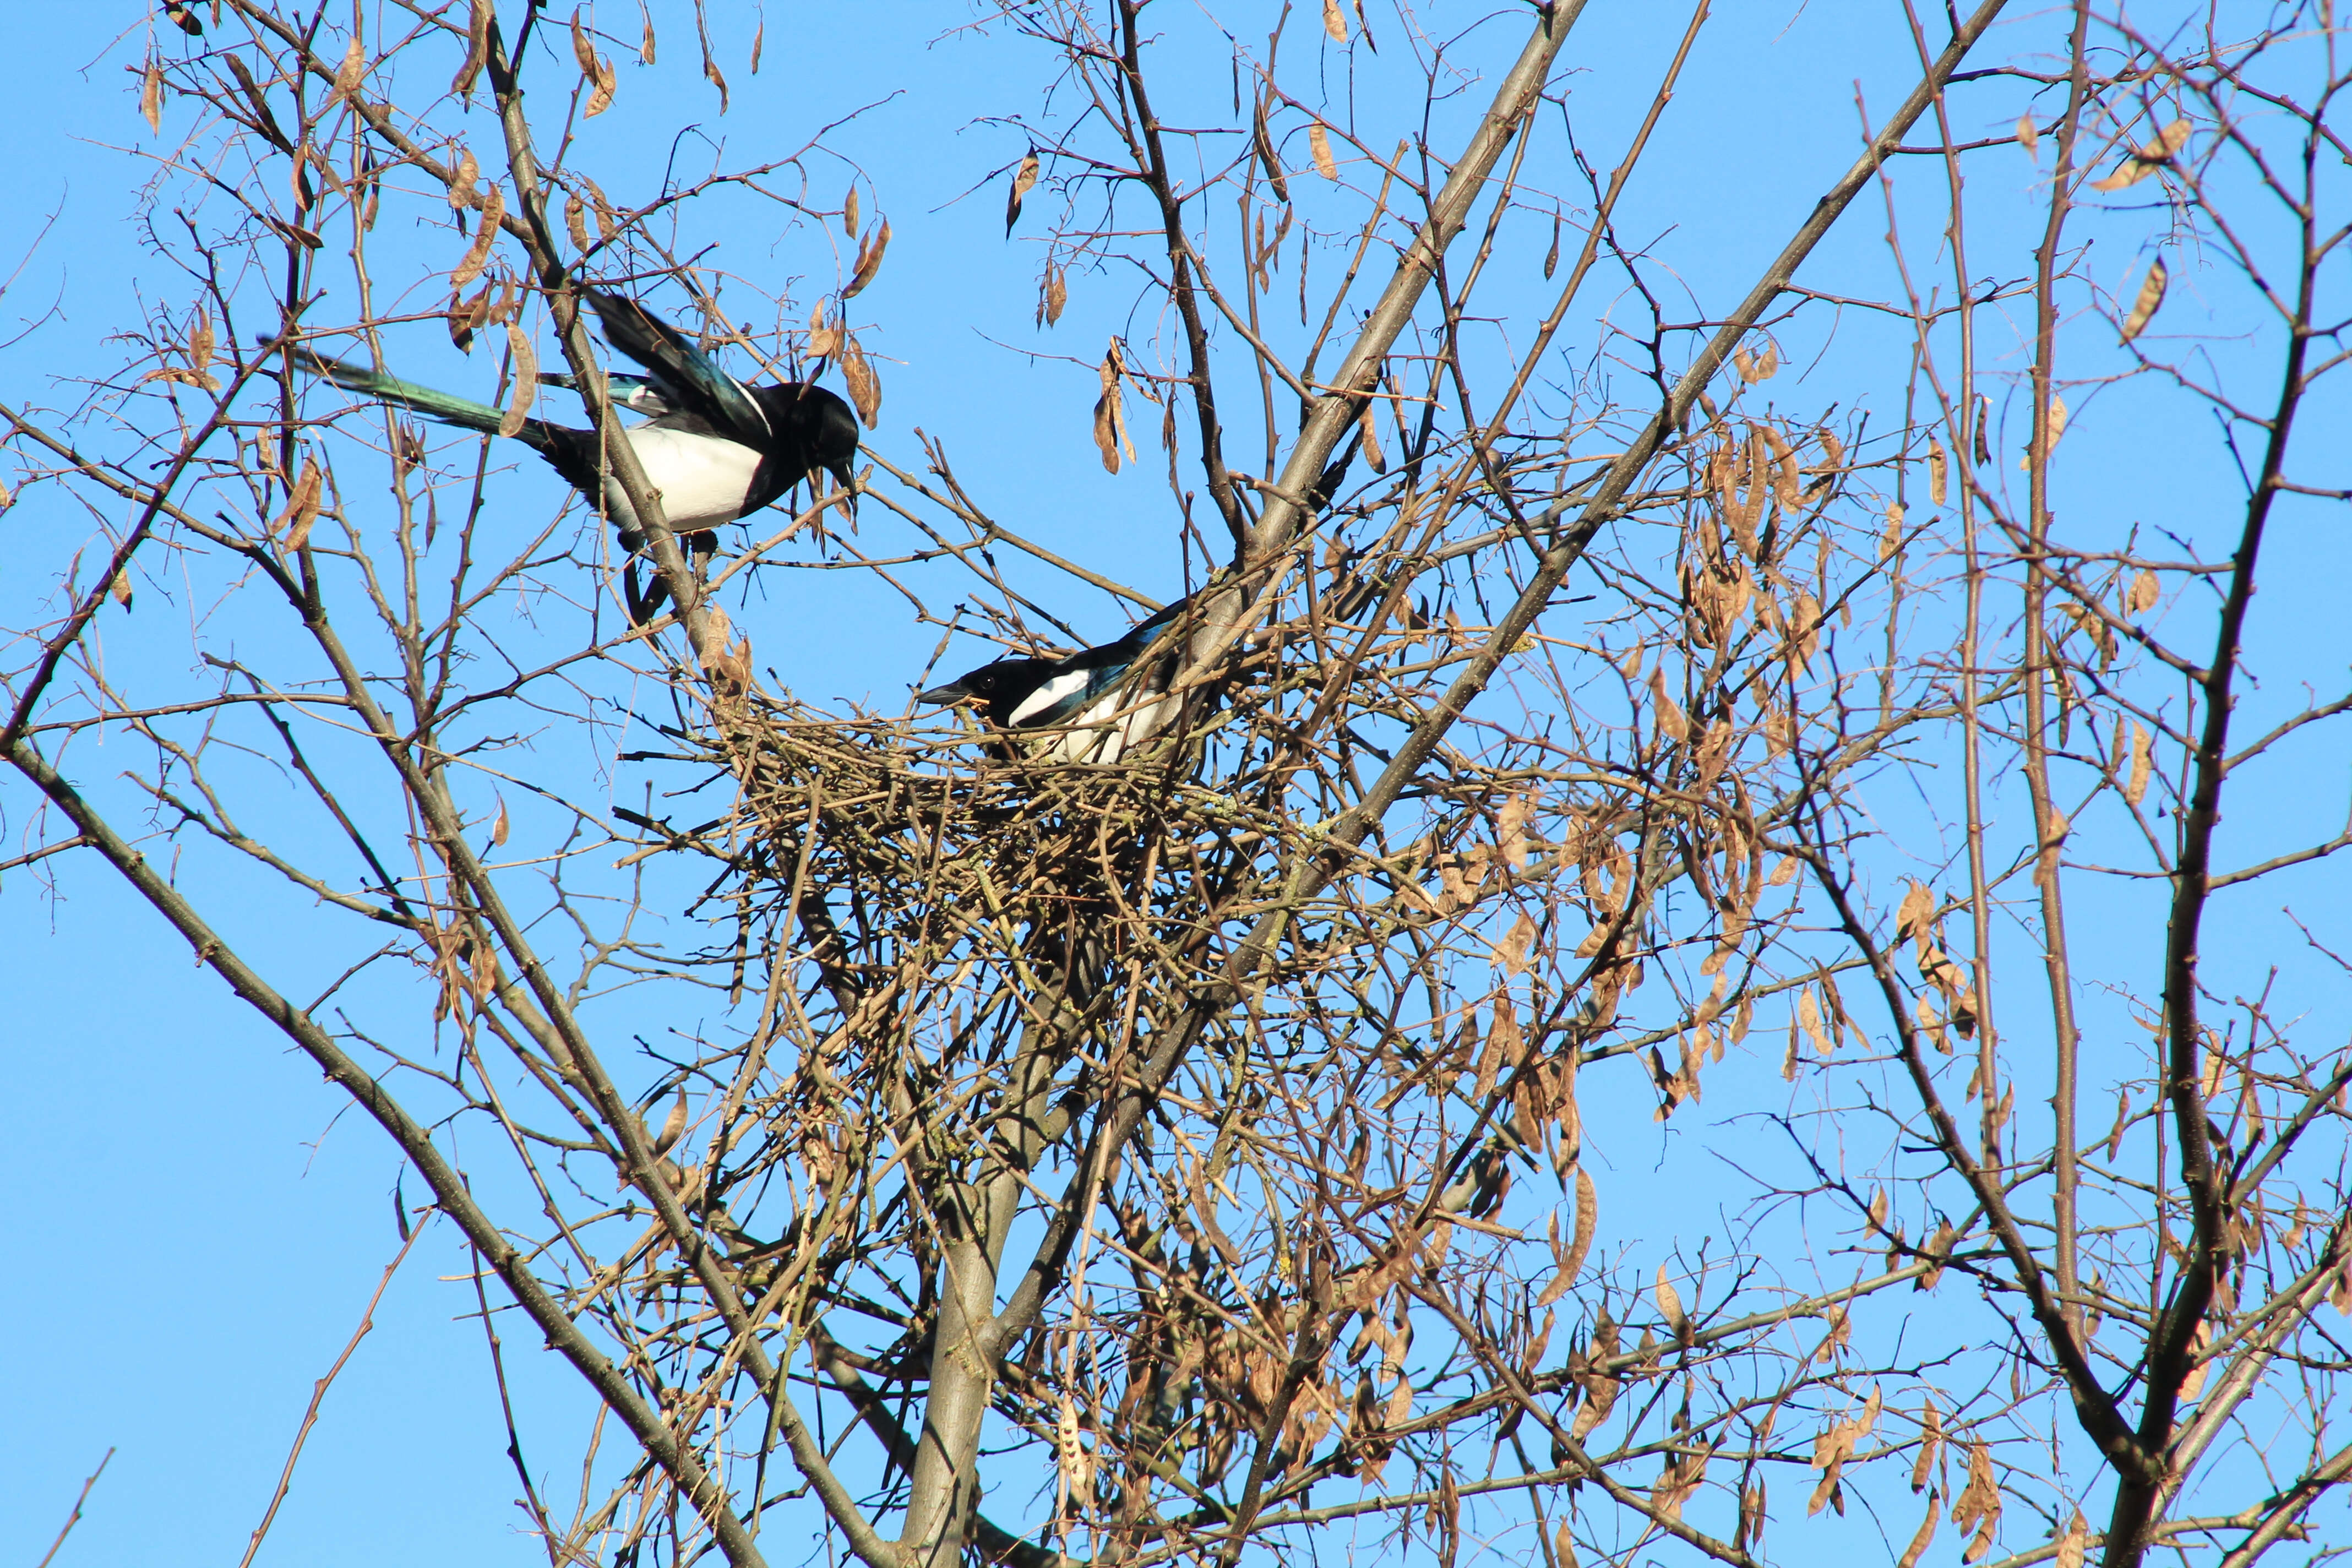 Magpie couple building a nest